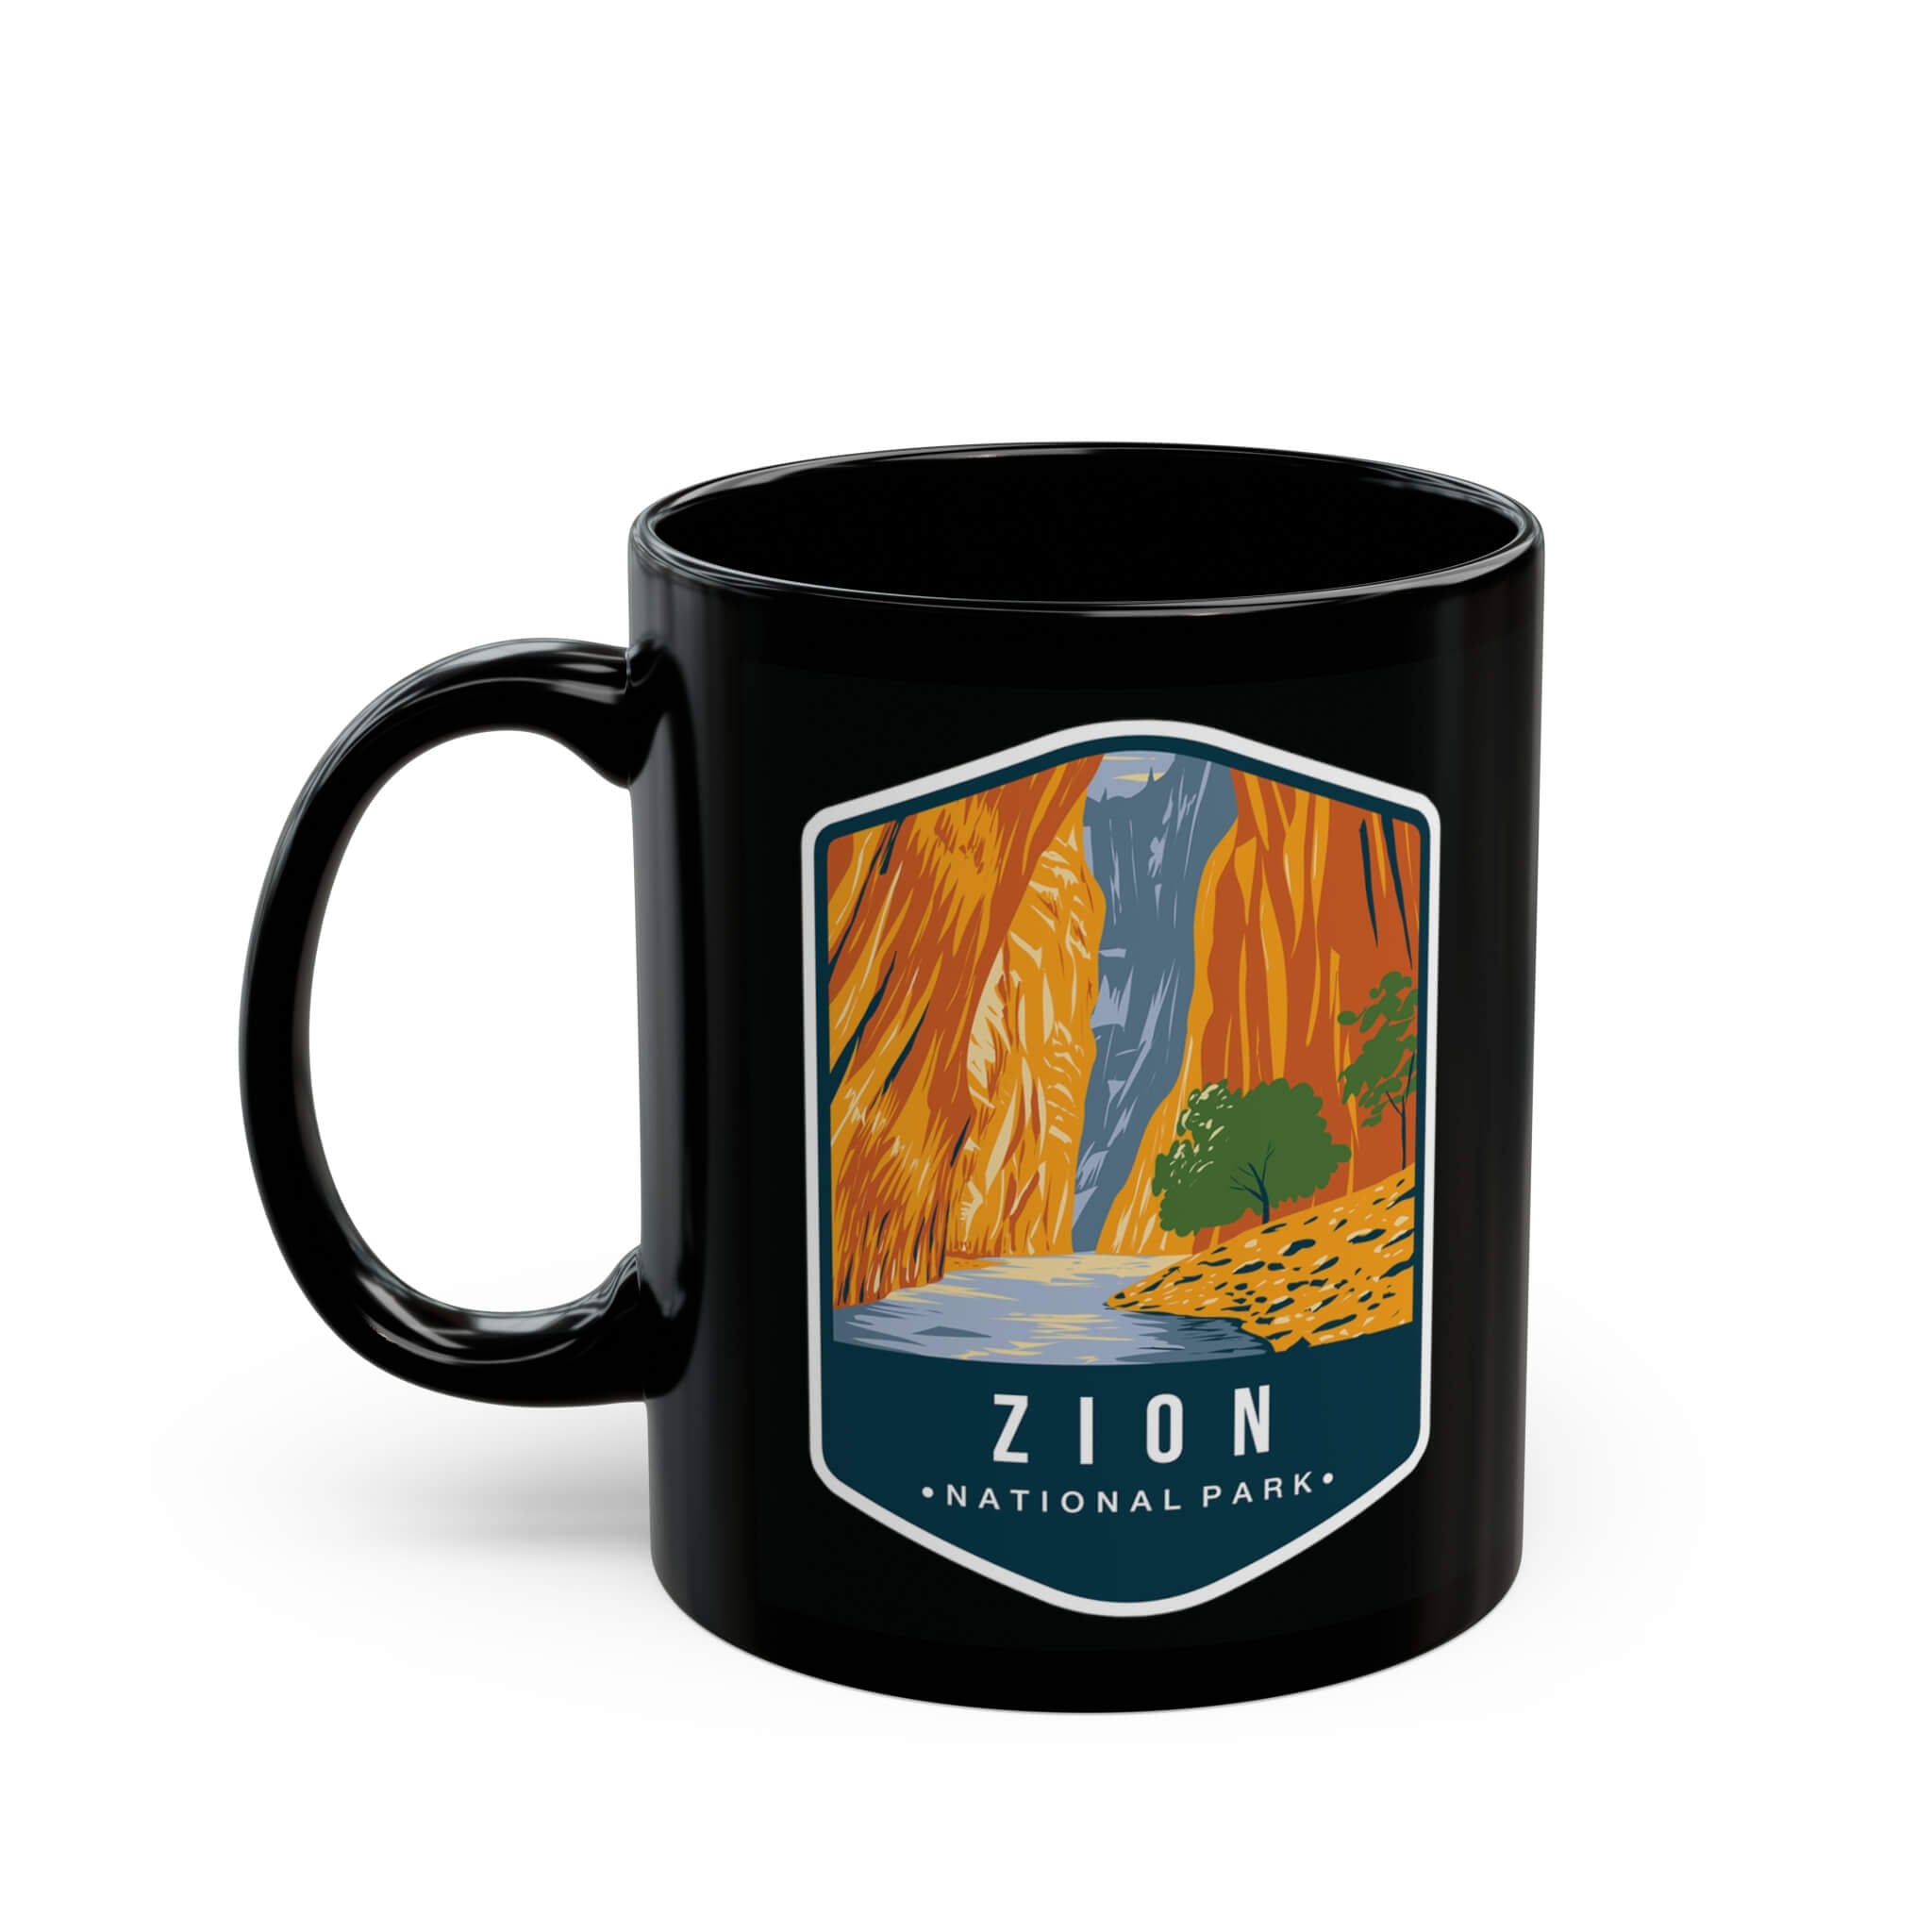 Zion National Park Black Ceramic Mug